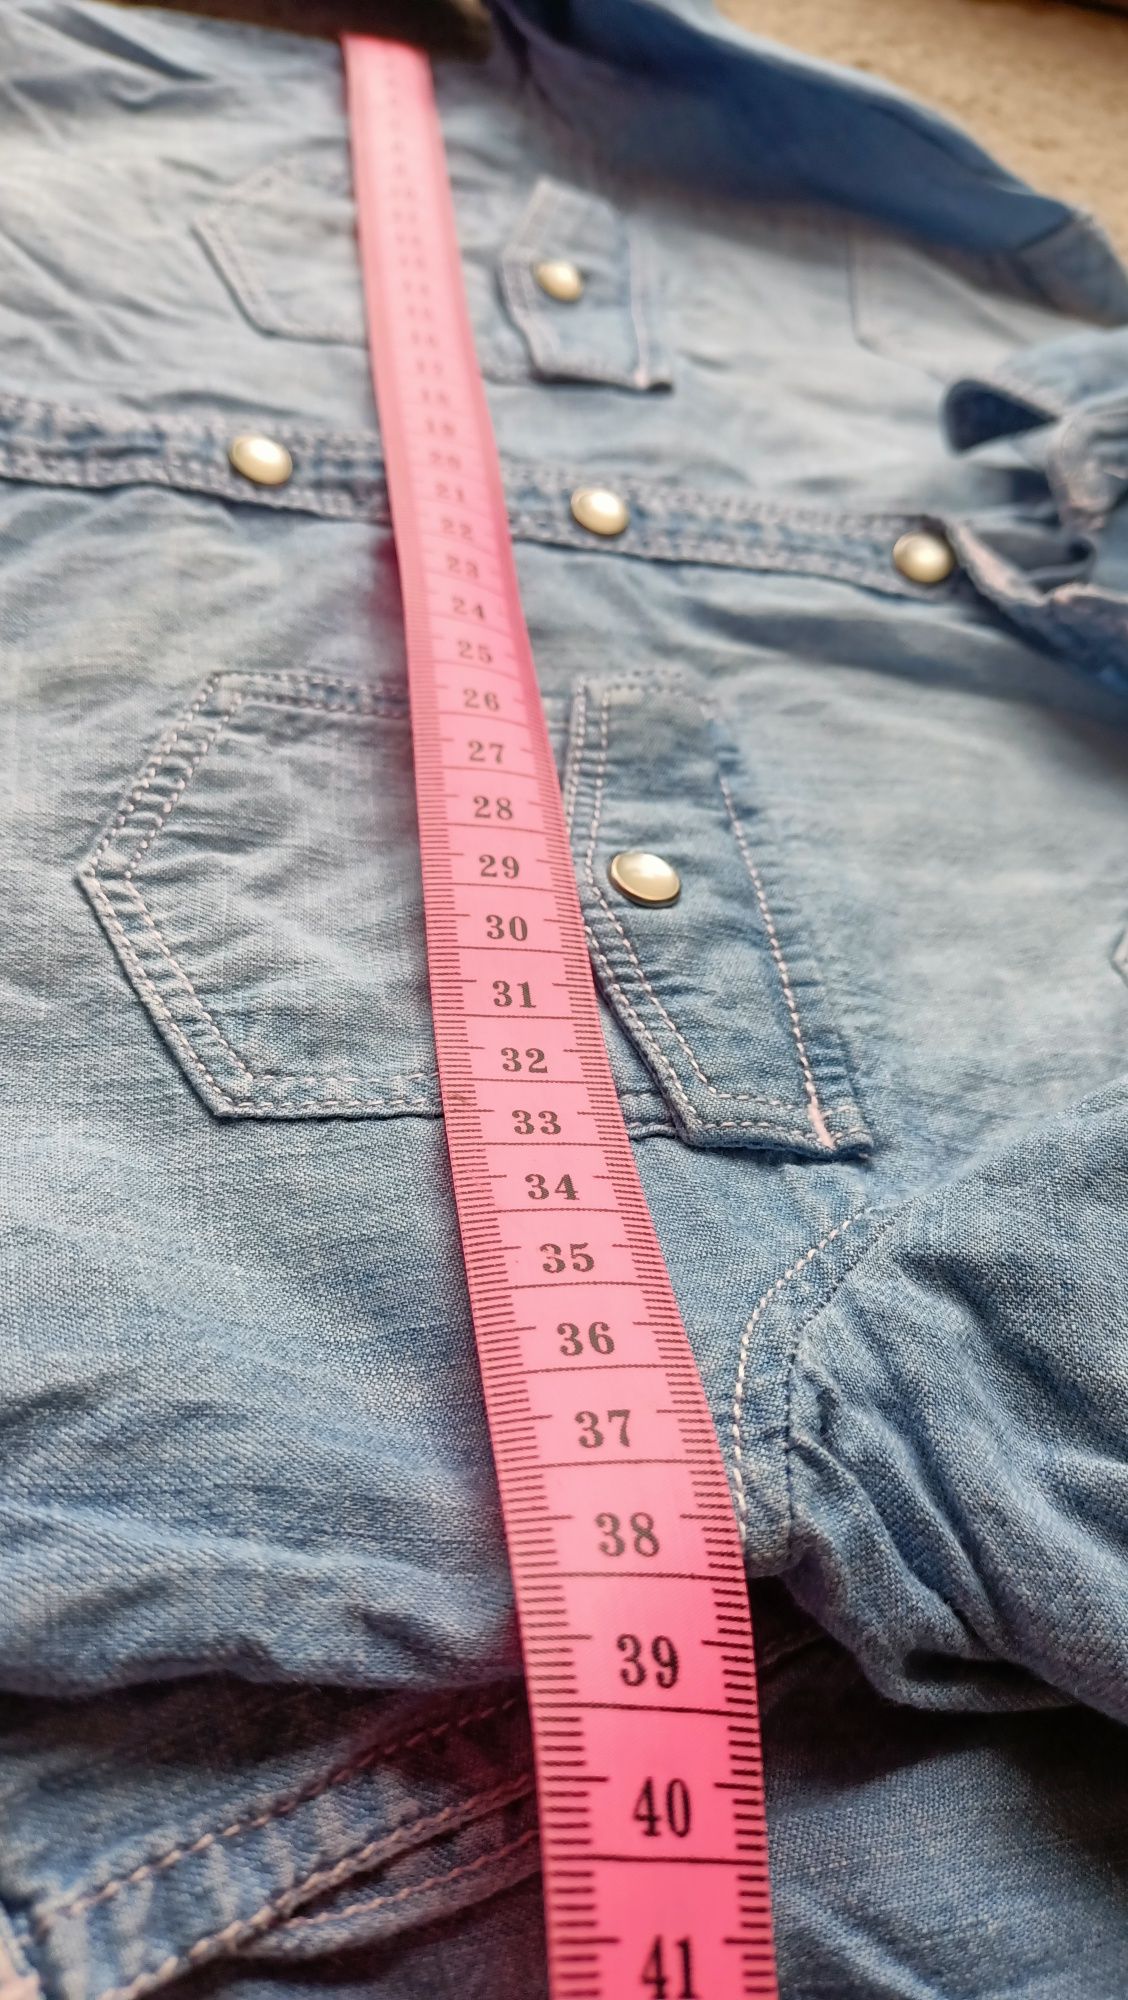 Jasniebieska koszula Ala jeans zapinana na zatrzaski H&M rozm 146